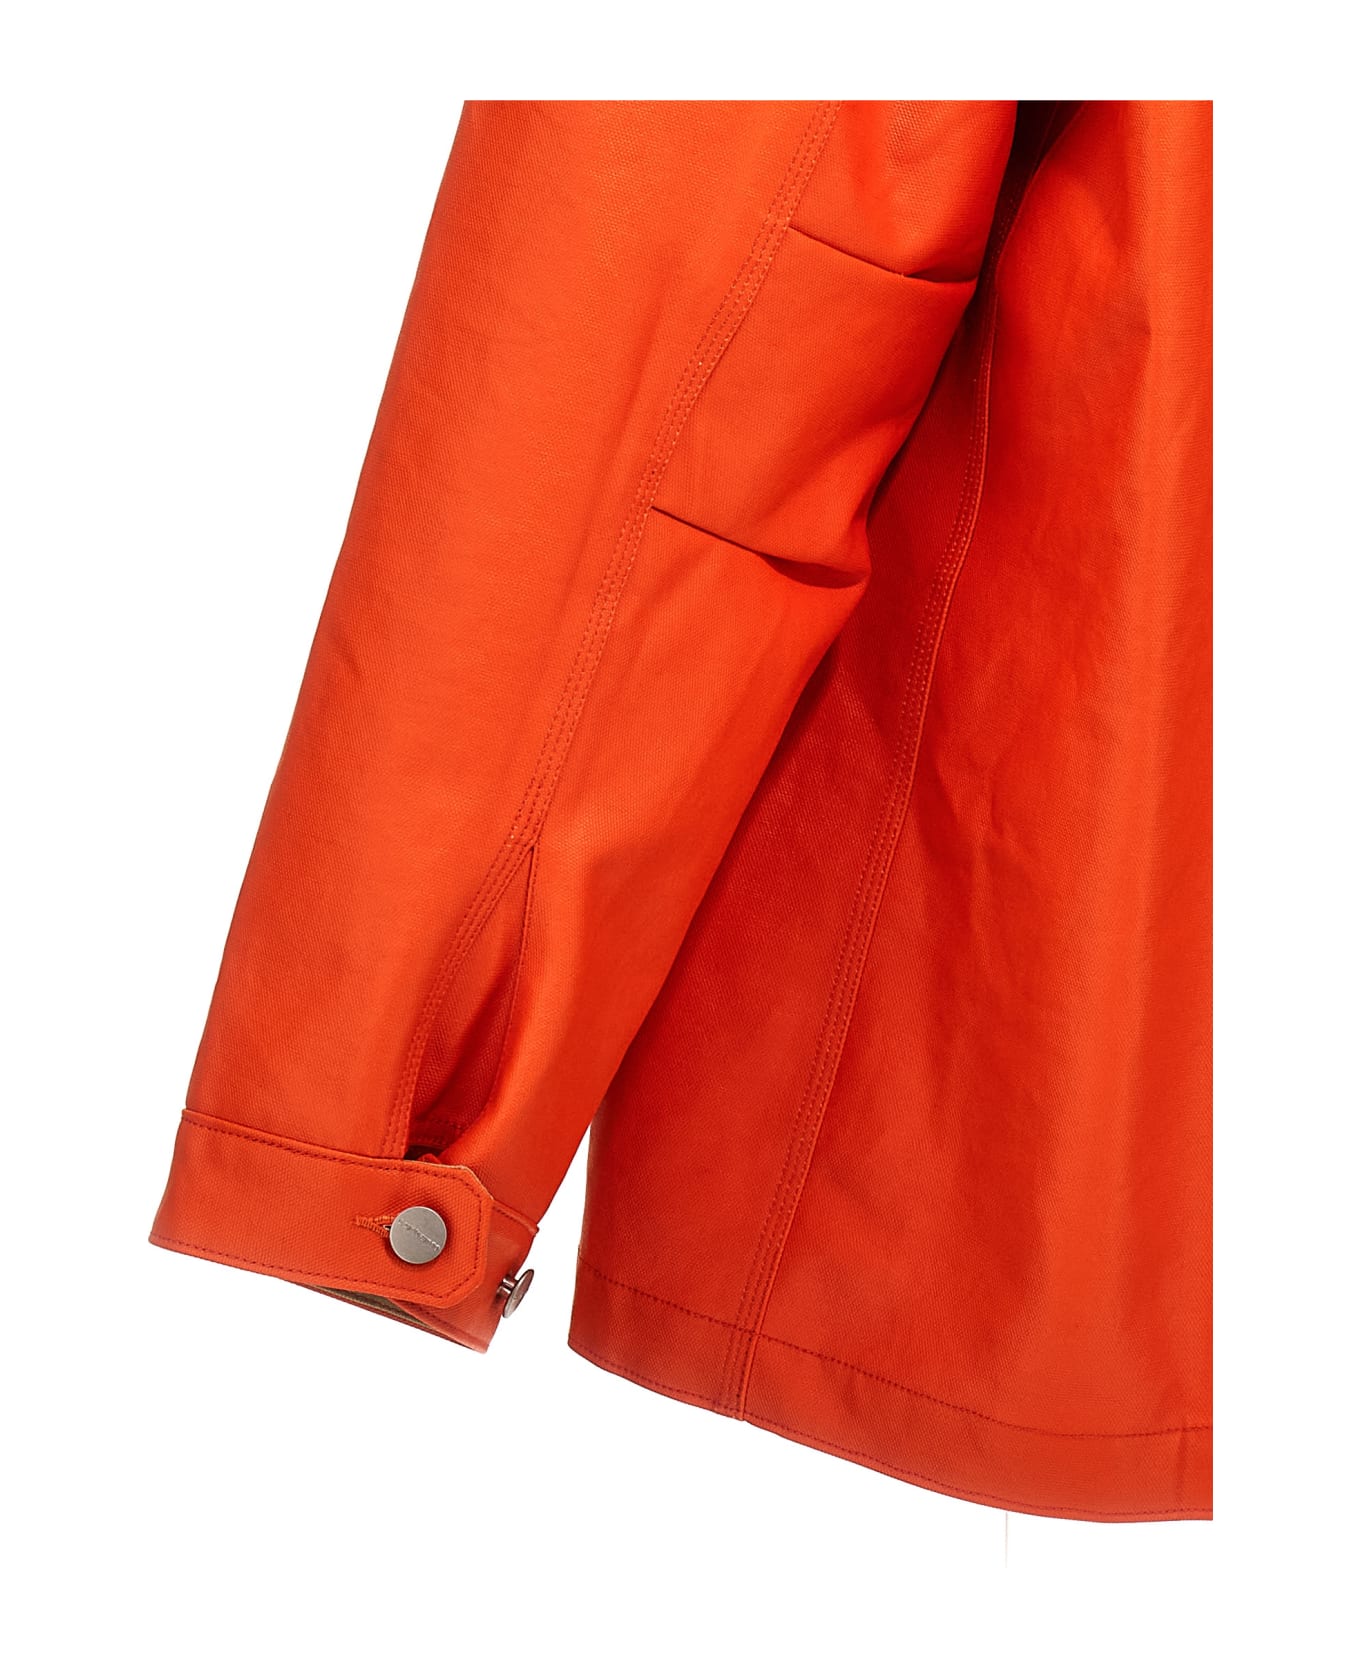 Junya Watanabe X Carhartt Jacket - Orange